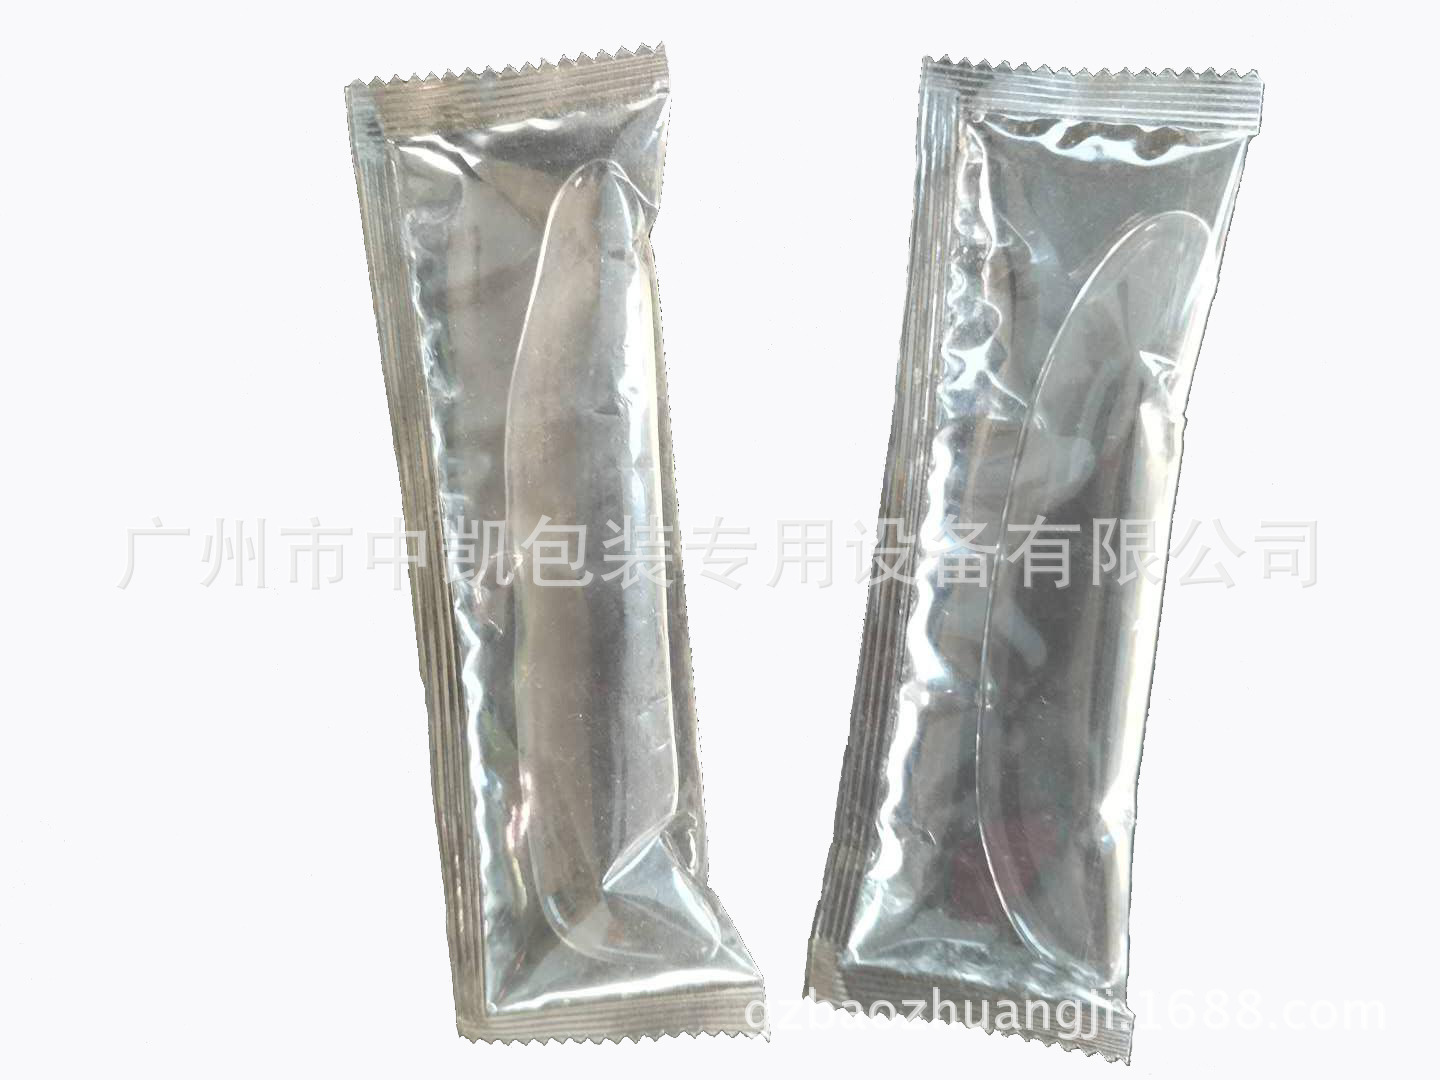 【厂家】广东自动液体包装机 酱油 米醋包装机|小型液体包装机示例图9